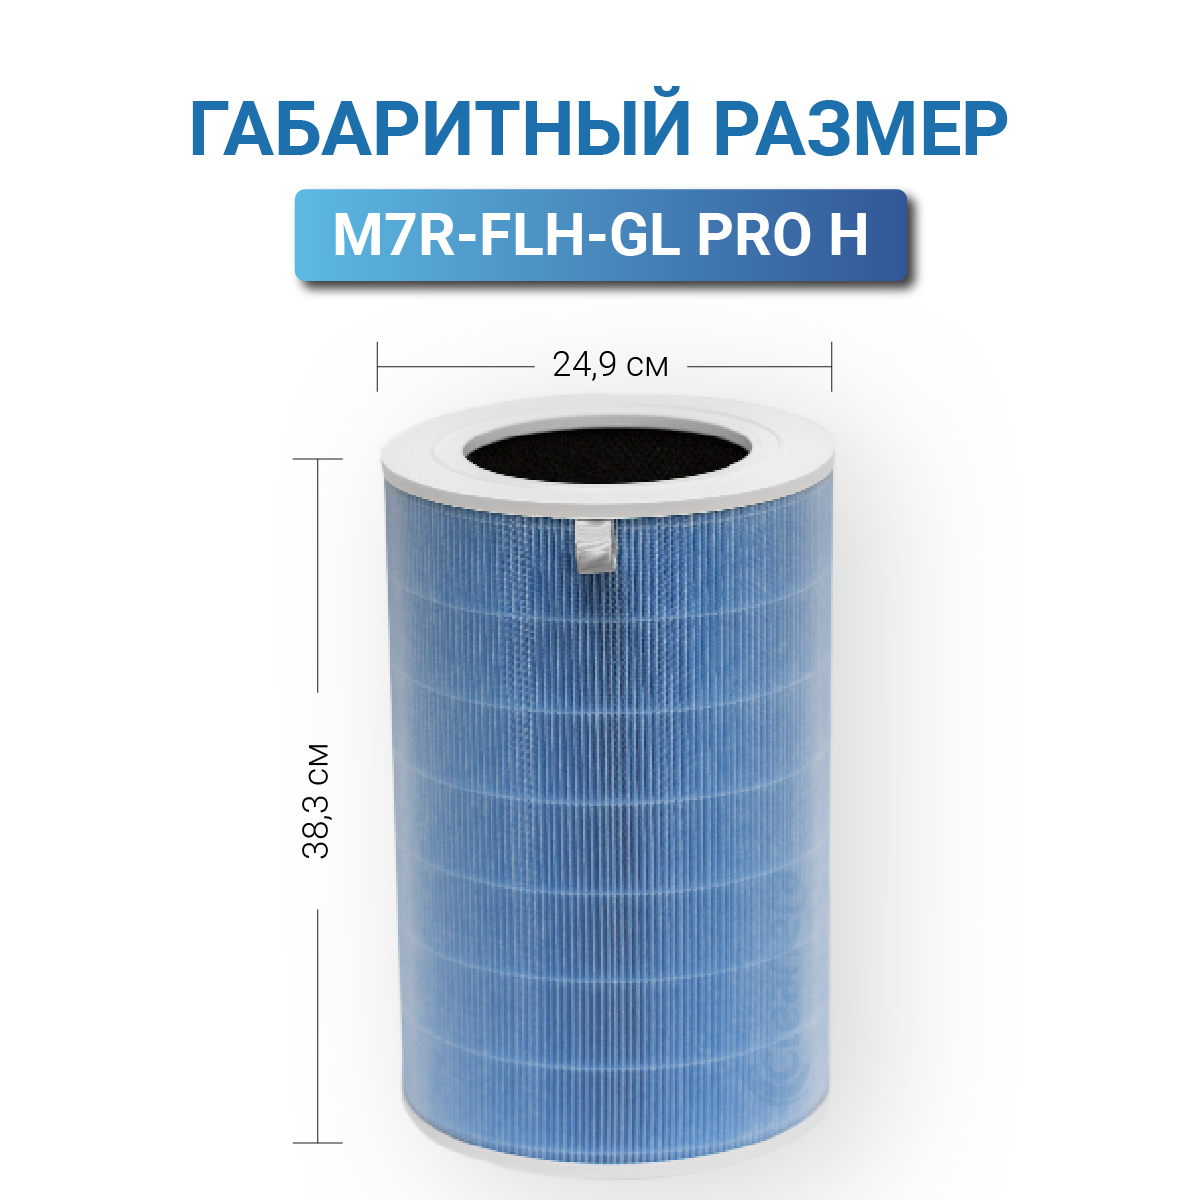 Фильтр для очистителя воздуха Xiaomi Mi Air Purifier Pro H с меткой RFID (M7R-FLH-GL PRO H)